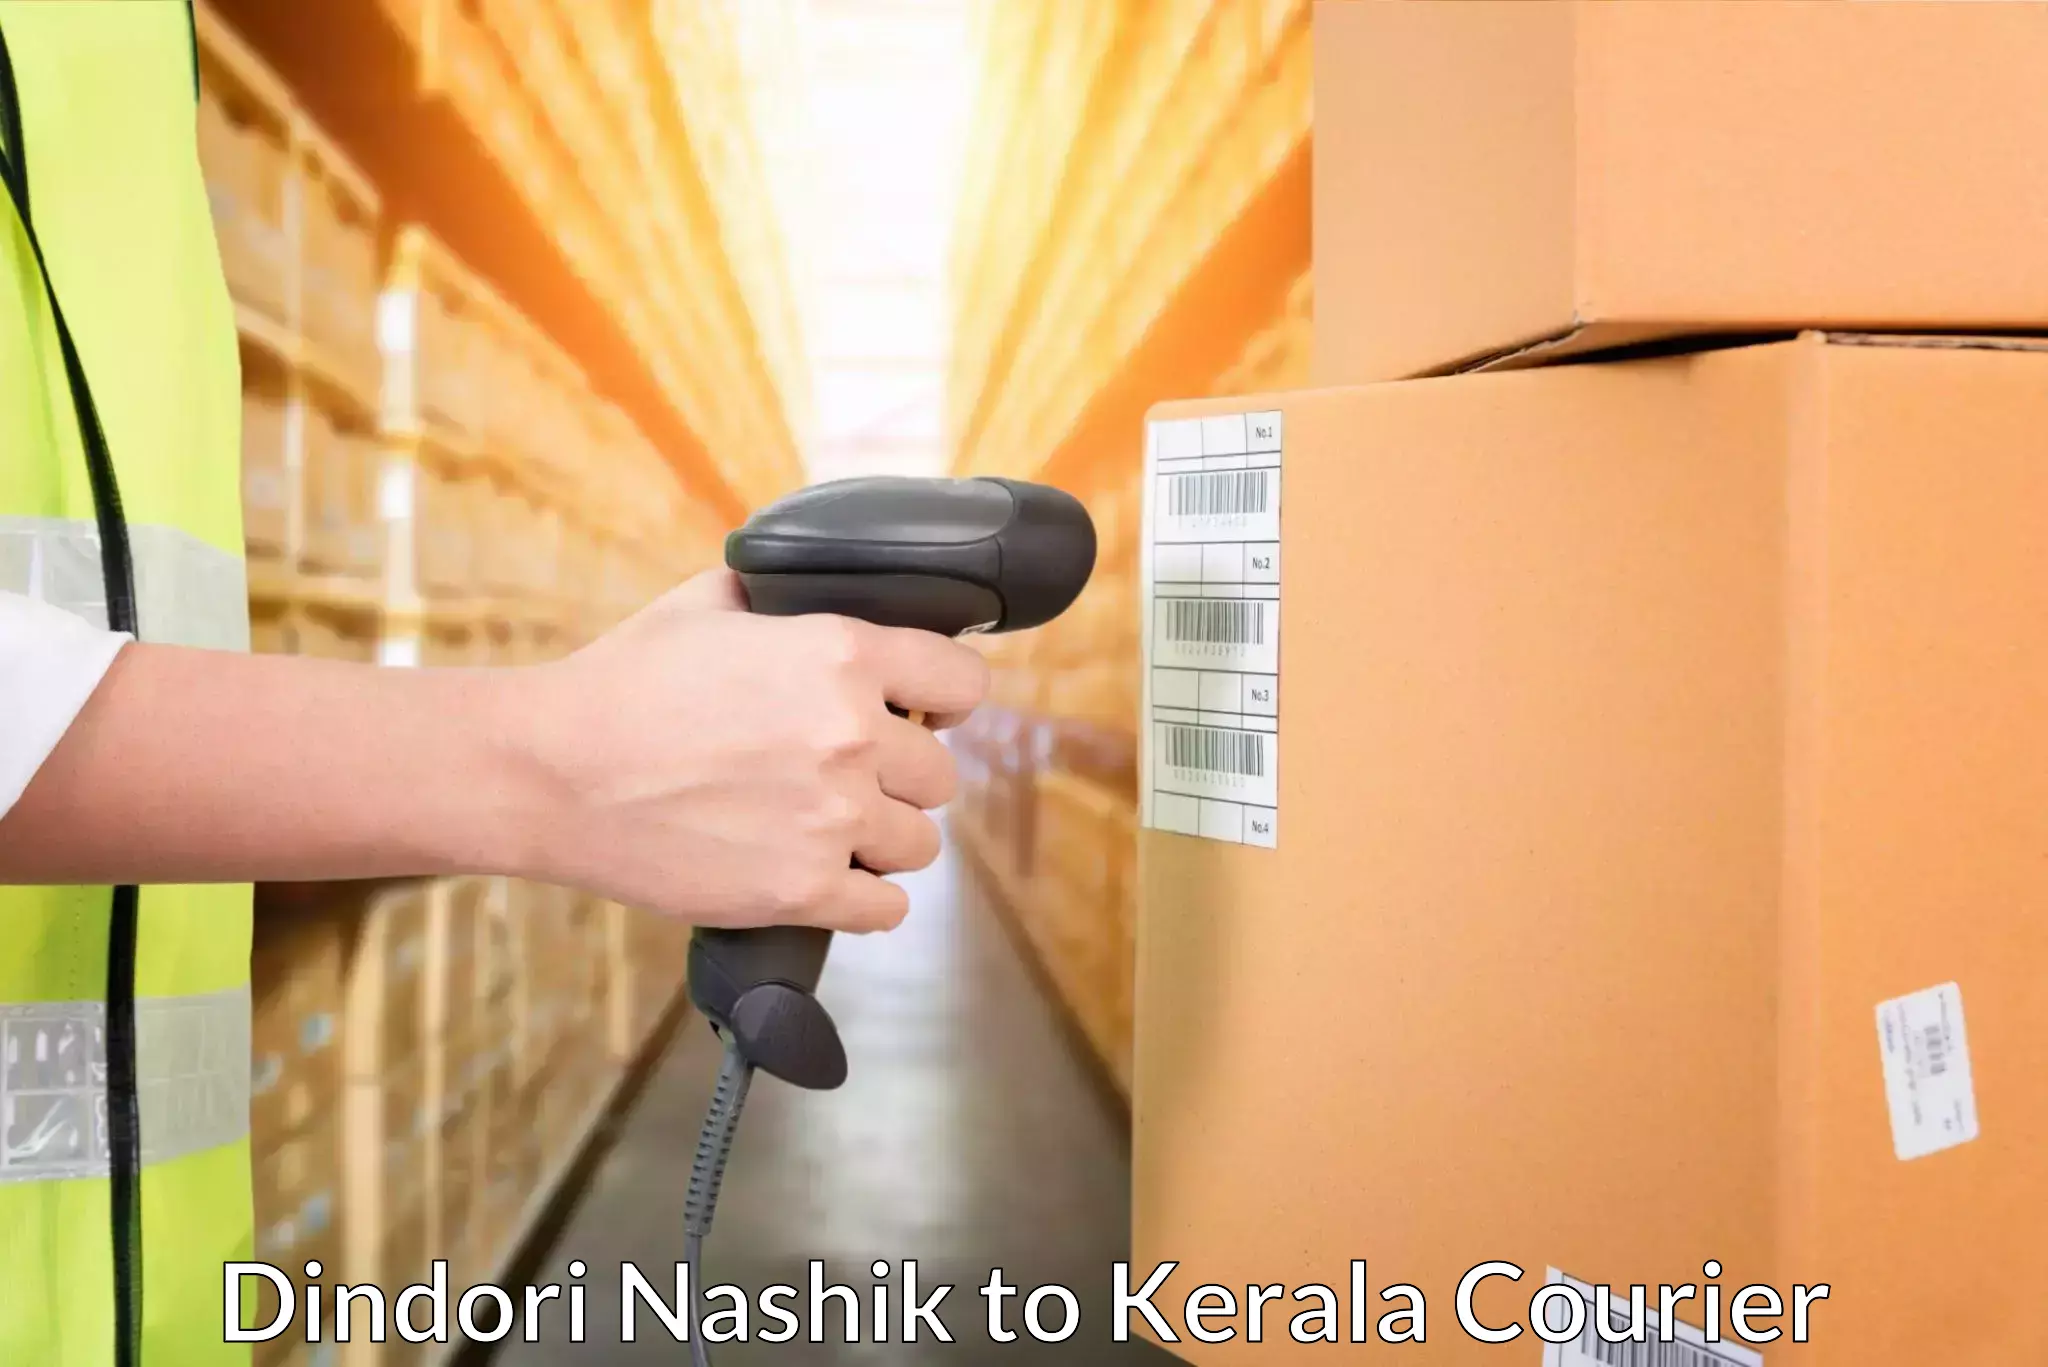 Urgent courier needs Dindori Nashik to Kerala